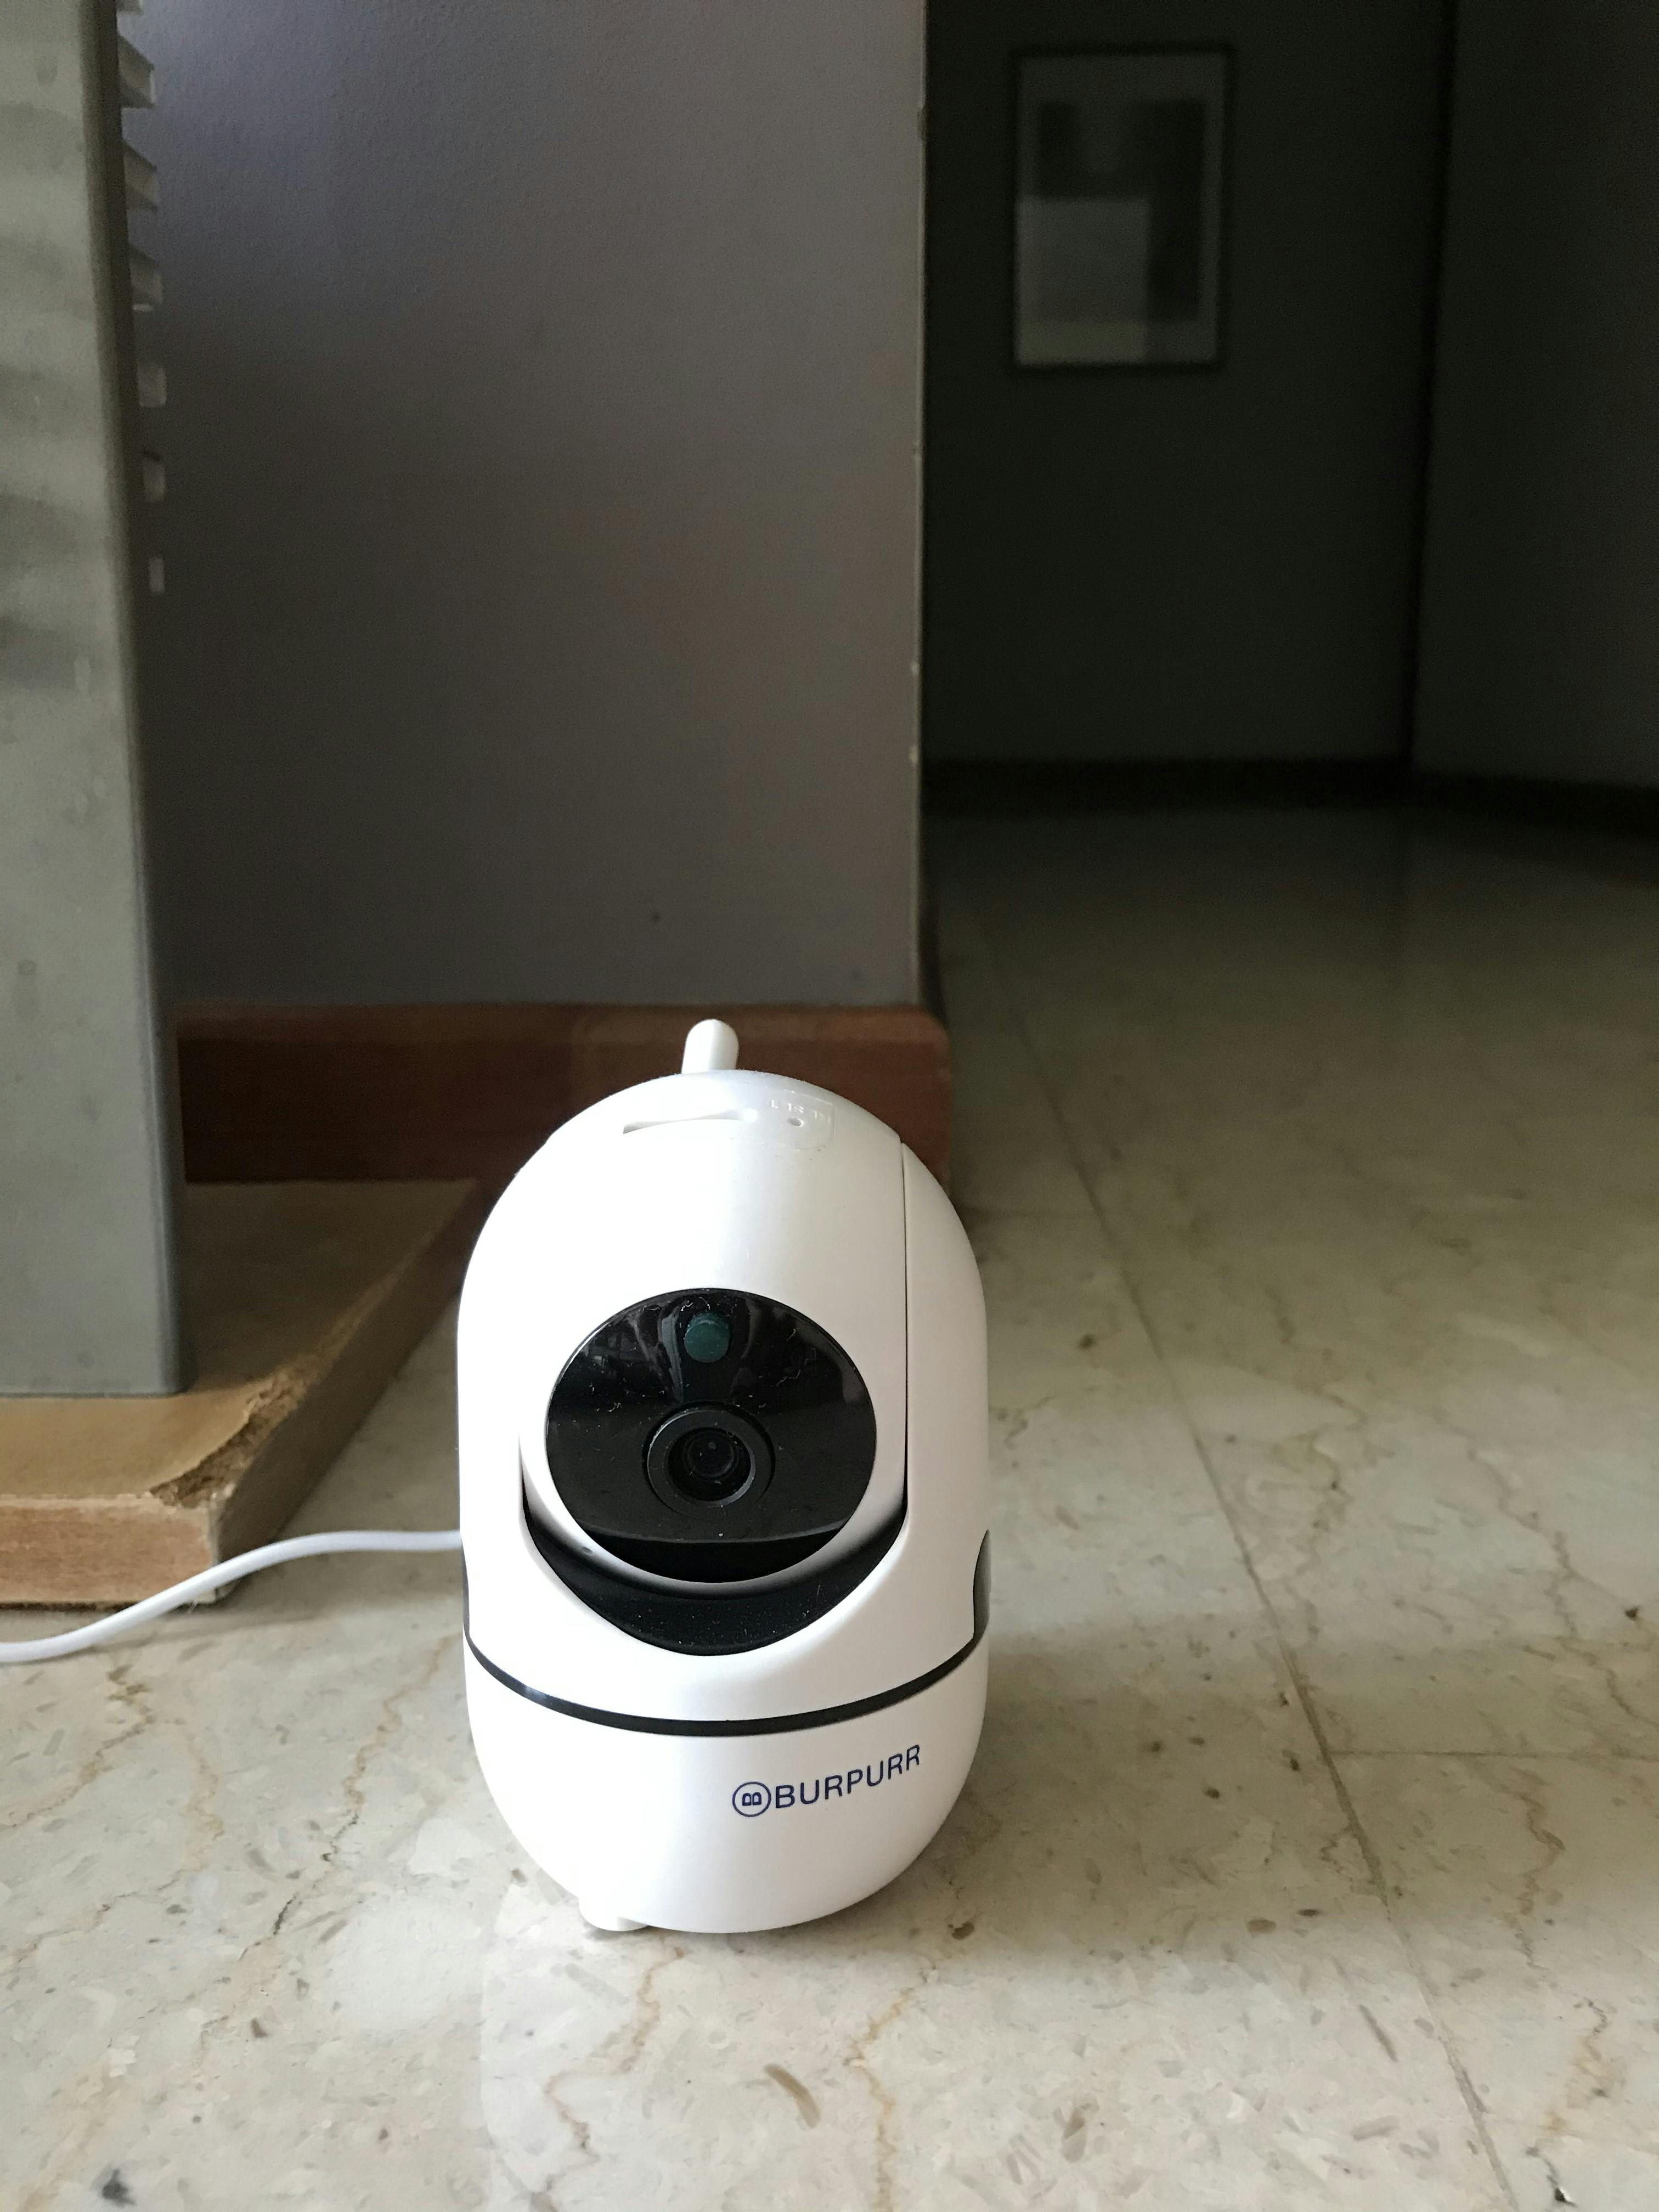 smartpaw pet camera